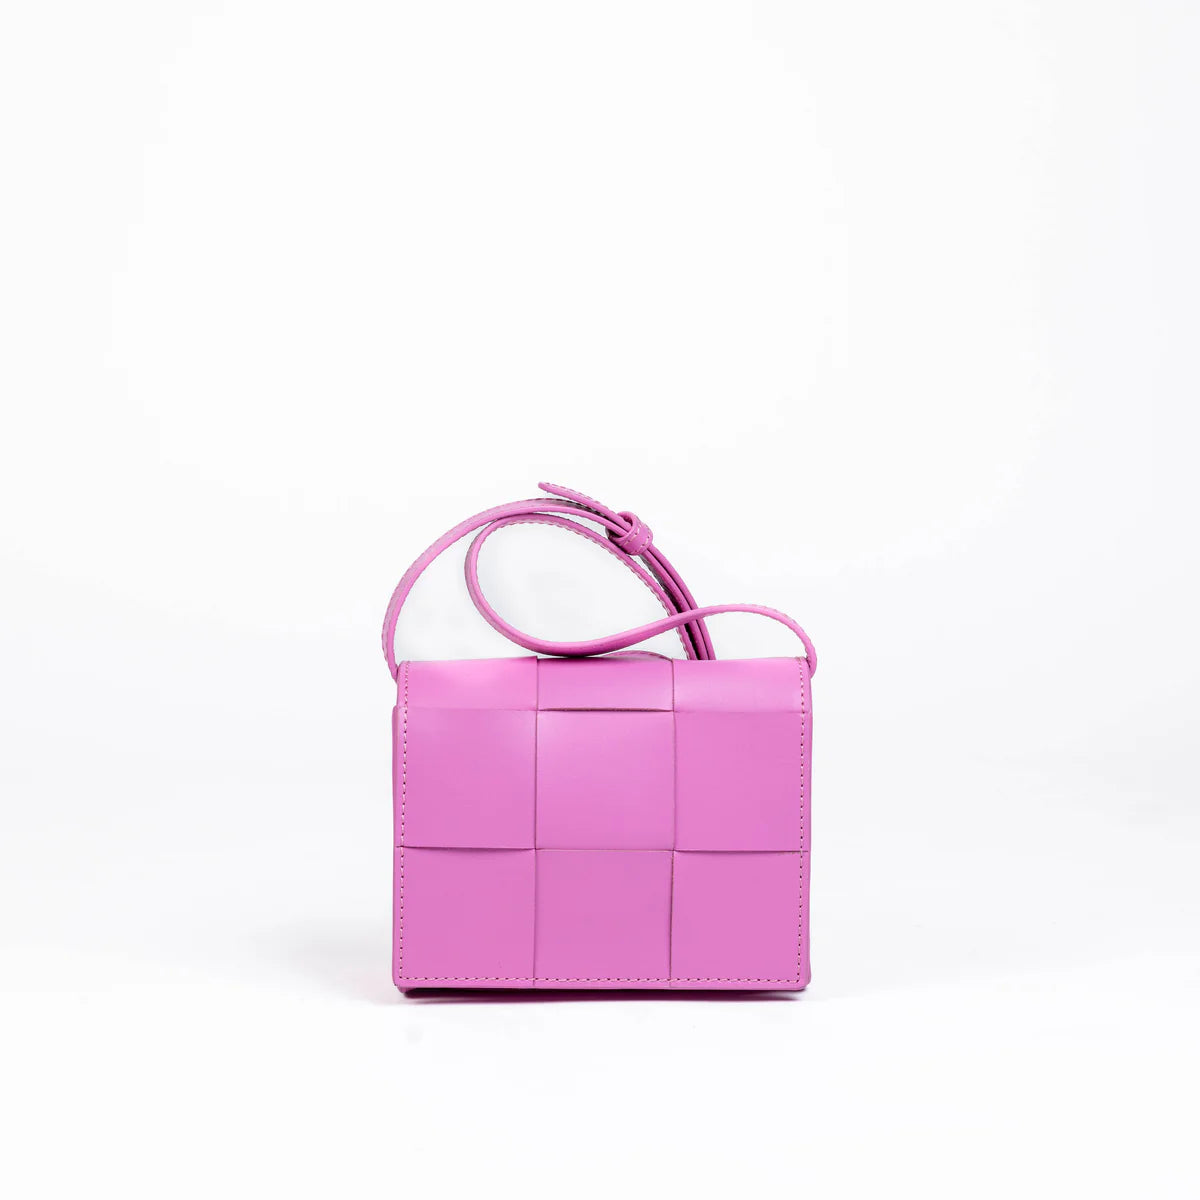 ALEO Match  Box Mini in Pink Cyclamen